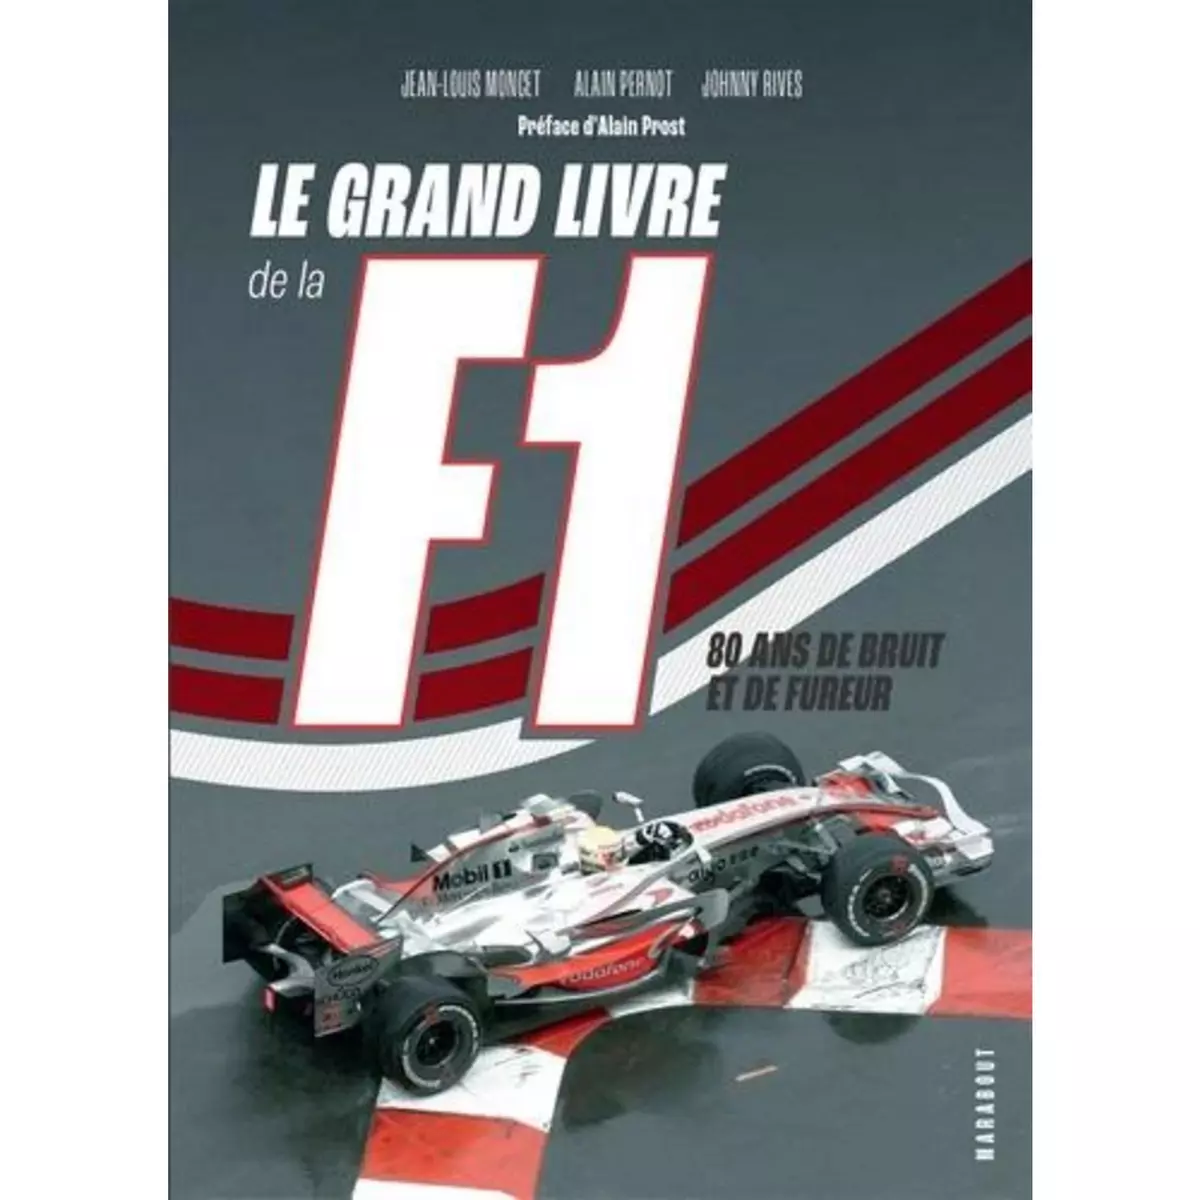  LE GRAND LIVRE DE LA F1. 80 ANS DE BRUIT ET DE FUREUR, Moncet Jean-Louis